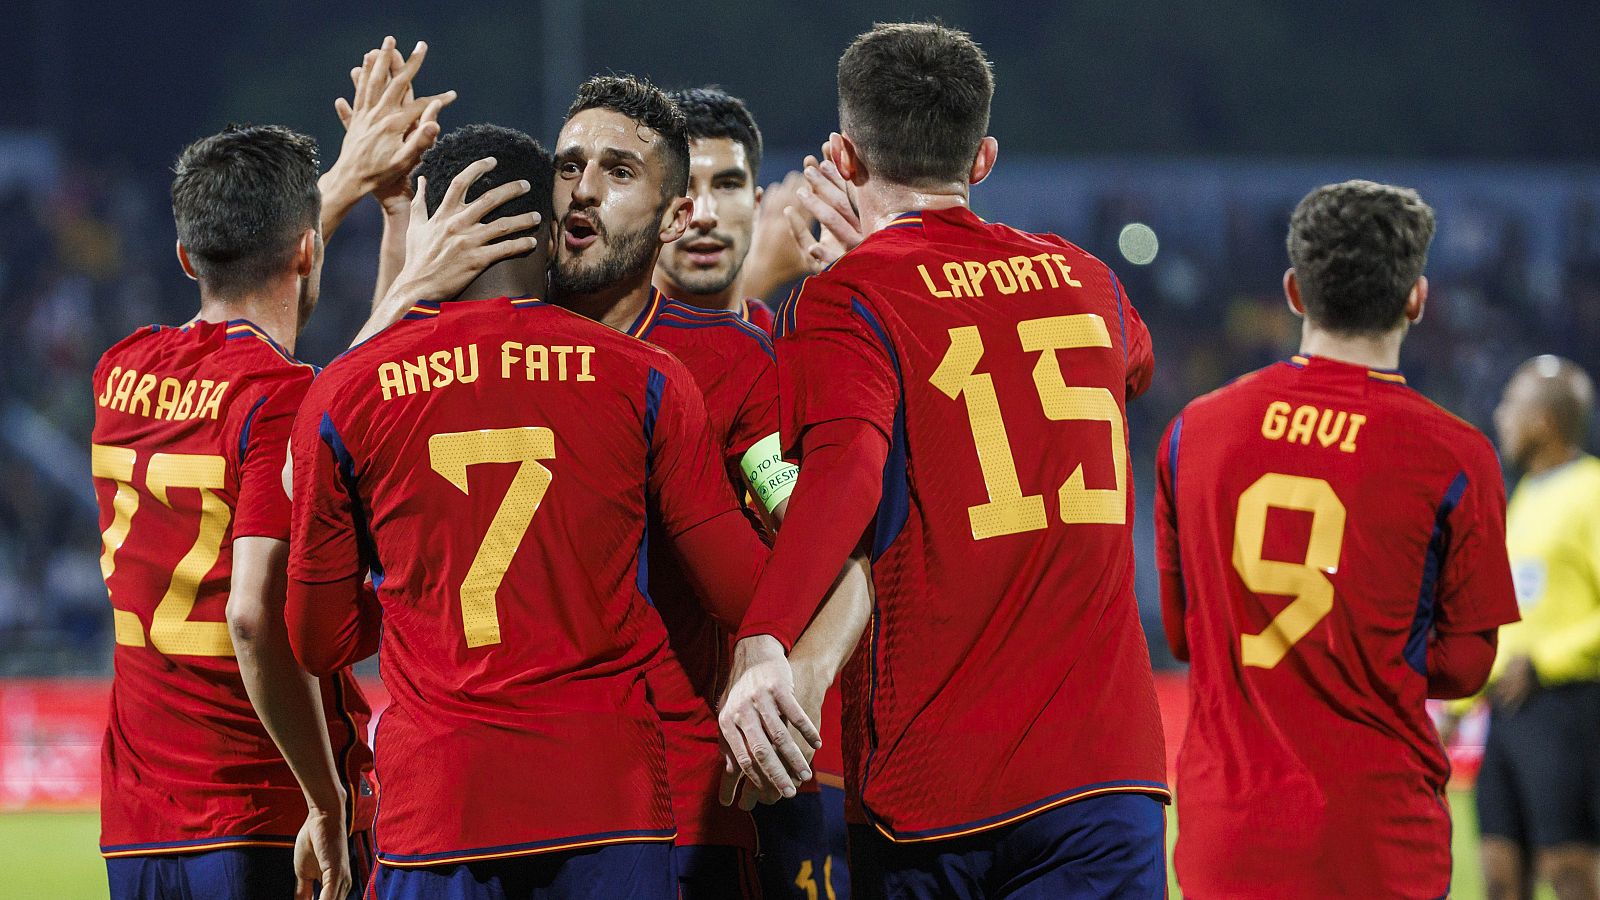 Jordania 1-3 España, amistoso: resumen y goles